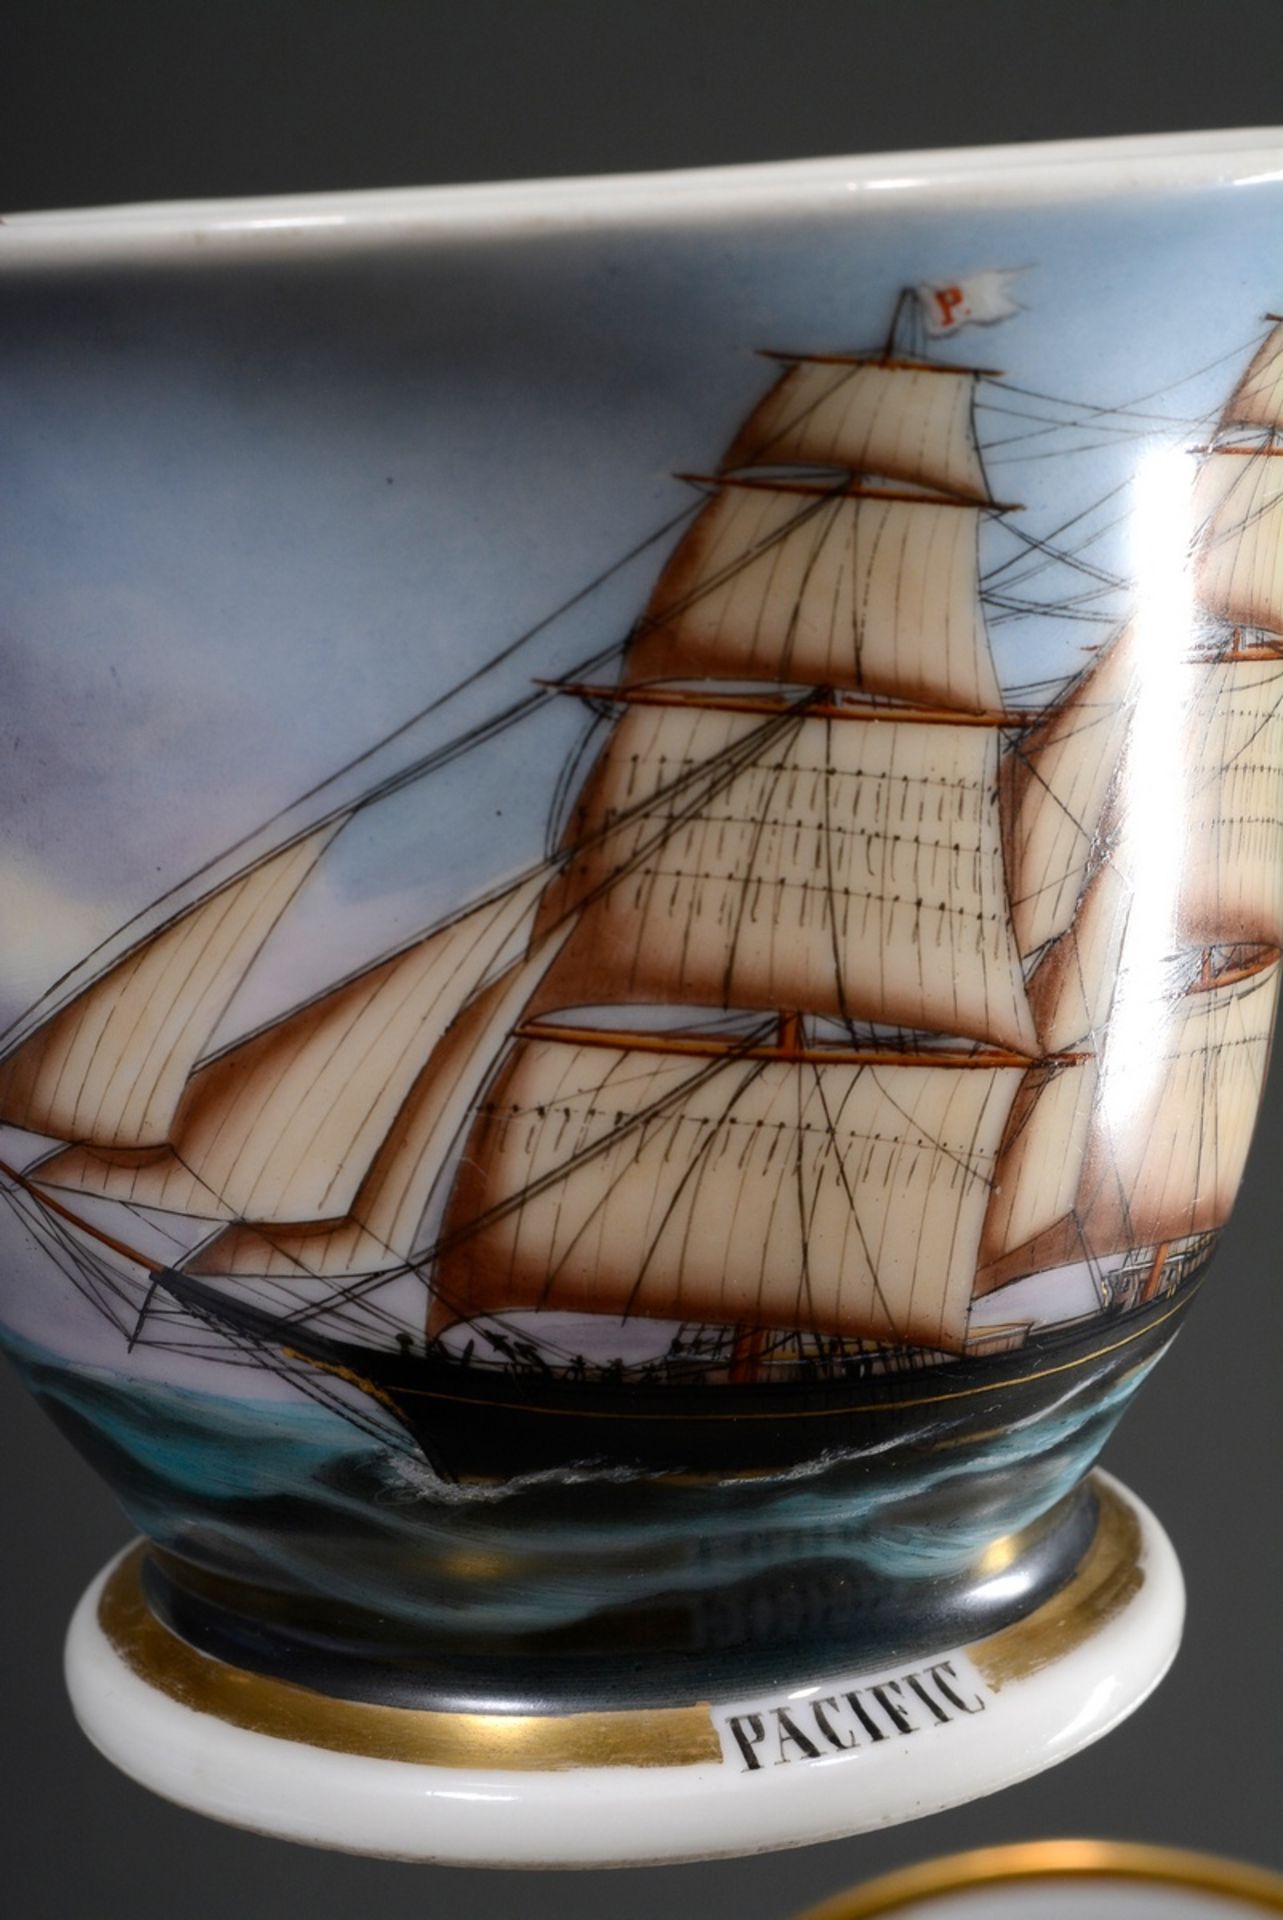 Captain's cup/UT: Brigg "Pacific", built by Schau & Oltmanns/Geestemünde 1860, captains: T. Fedders - Image 4 of 7